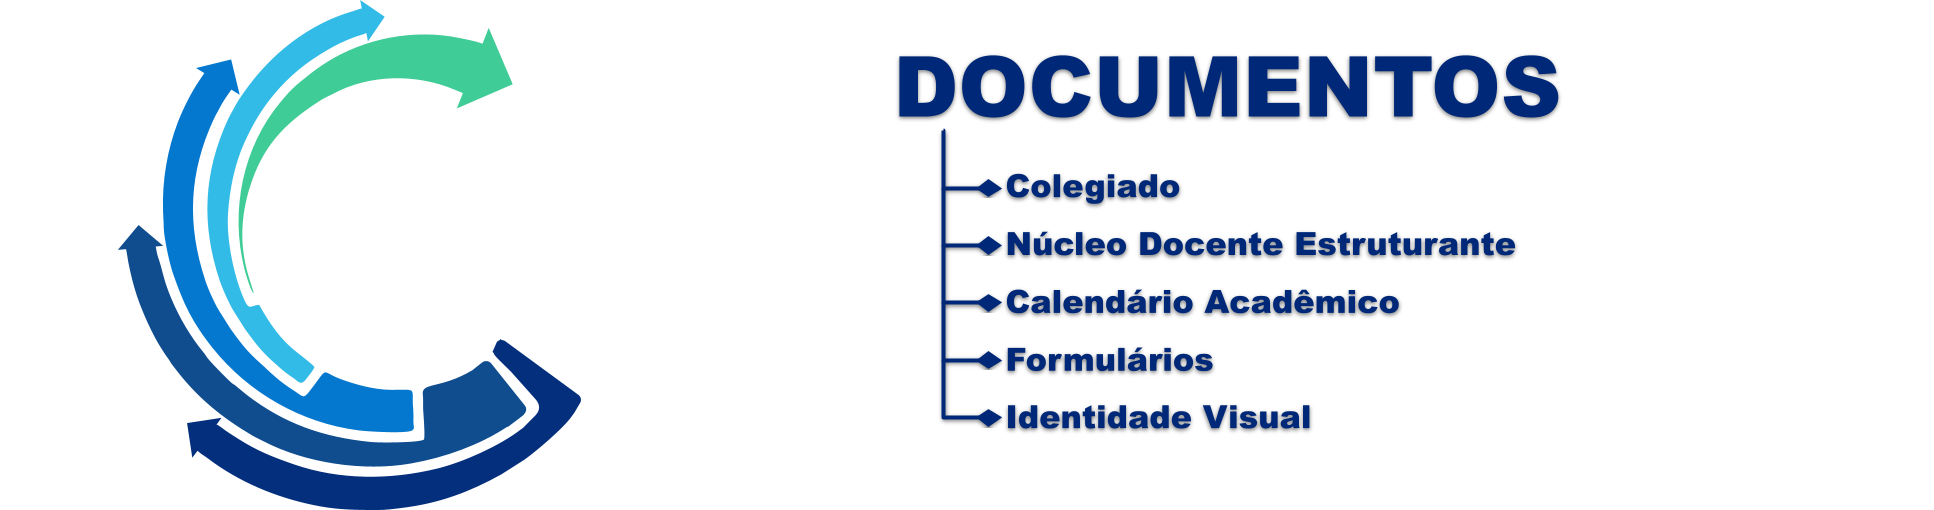 Header Documentos 2